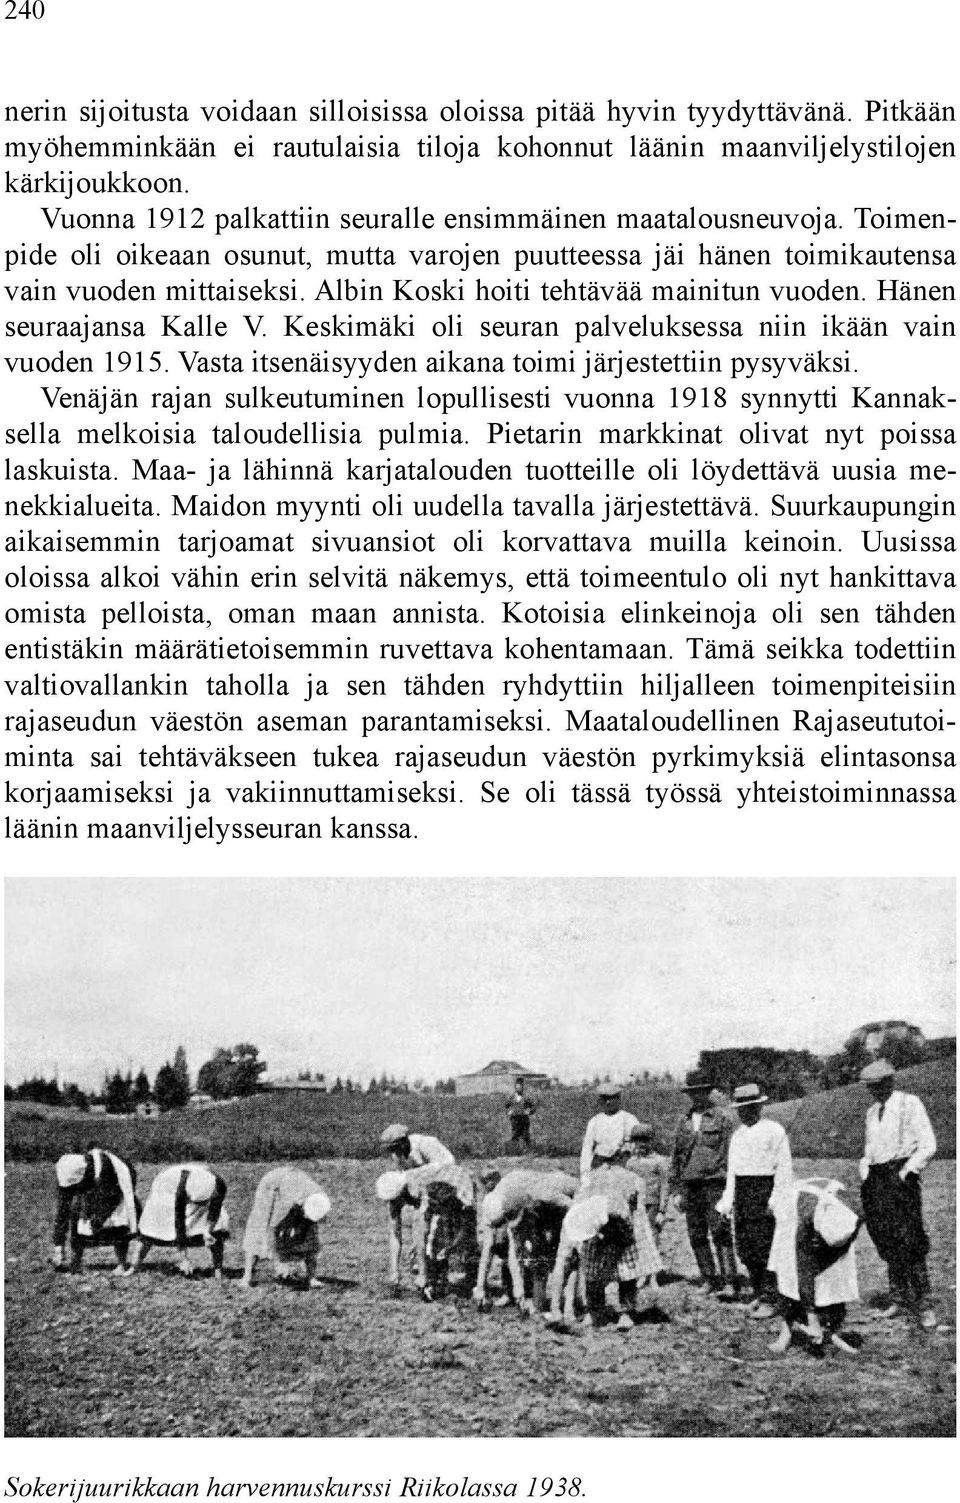 Albin Koski hoiti tehtävää mainitun vuoden. Hänen seuraajansa Kalle V. Keskimäki oli seuran palveluksessa niin ikään vain vuoden 1915. Vasta itsenäisyyden aikana toimi järjestettiin pysyväksi.